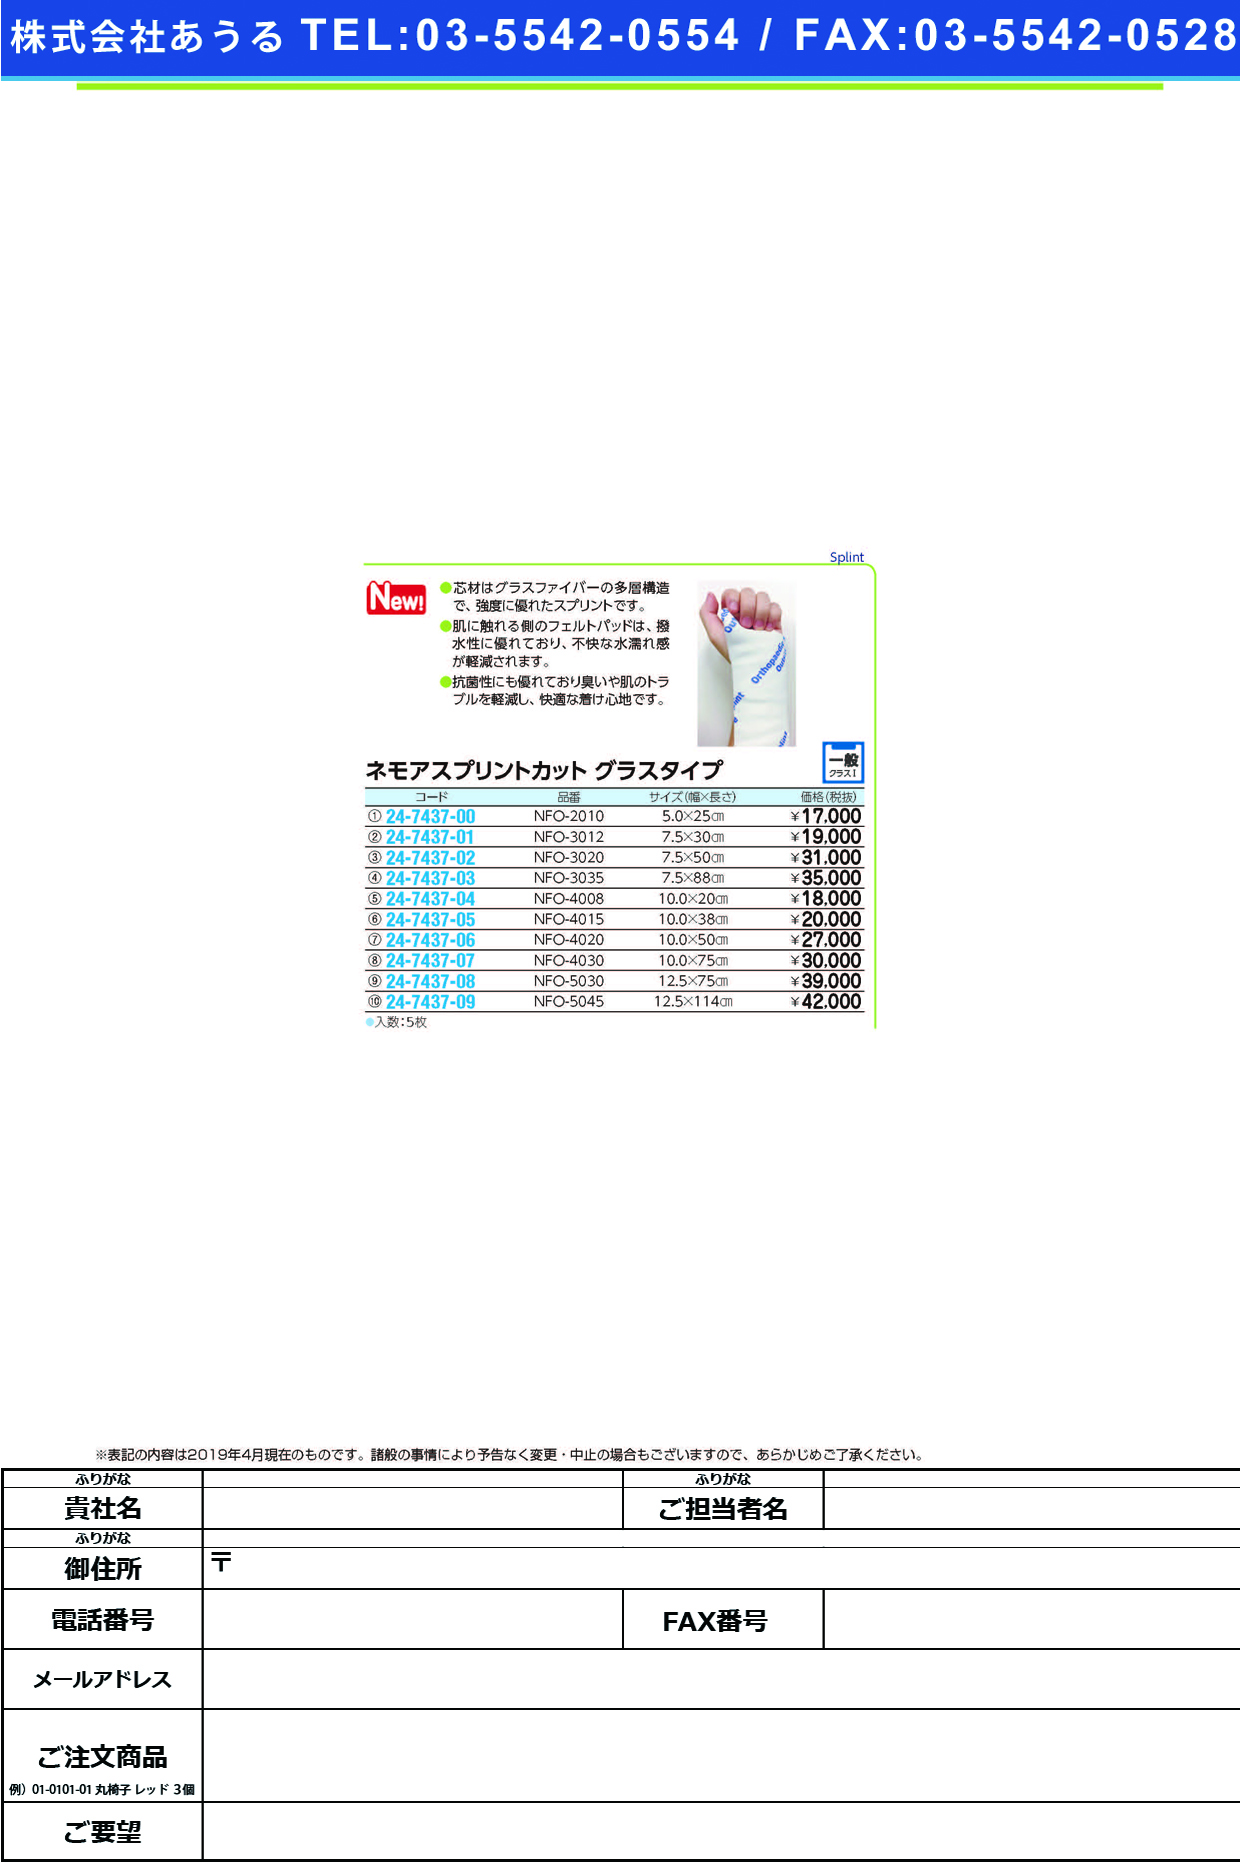 (24-7437-09)ネモアスプリントカット　グラスタイプNFO-5045(12.5X114CM) ﾈﾓｱｽﾌﾟﾘﾝﾄｶｯﾄｸﾞﾗｽﾀｲﾌﾟ(日本ハイテック)【1箱単位】【2019年カタログ商品】